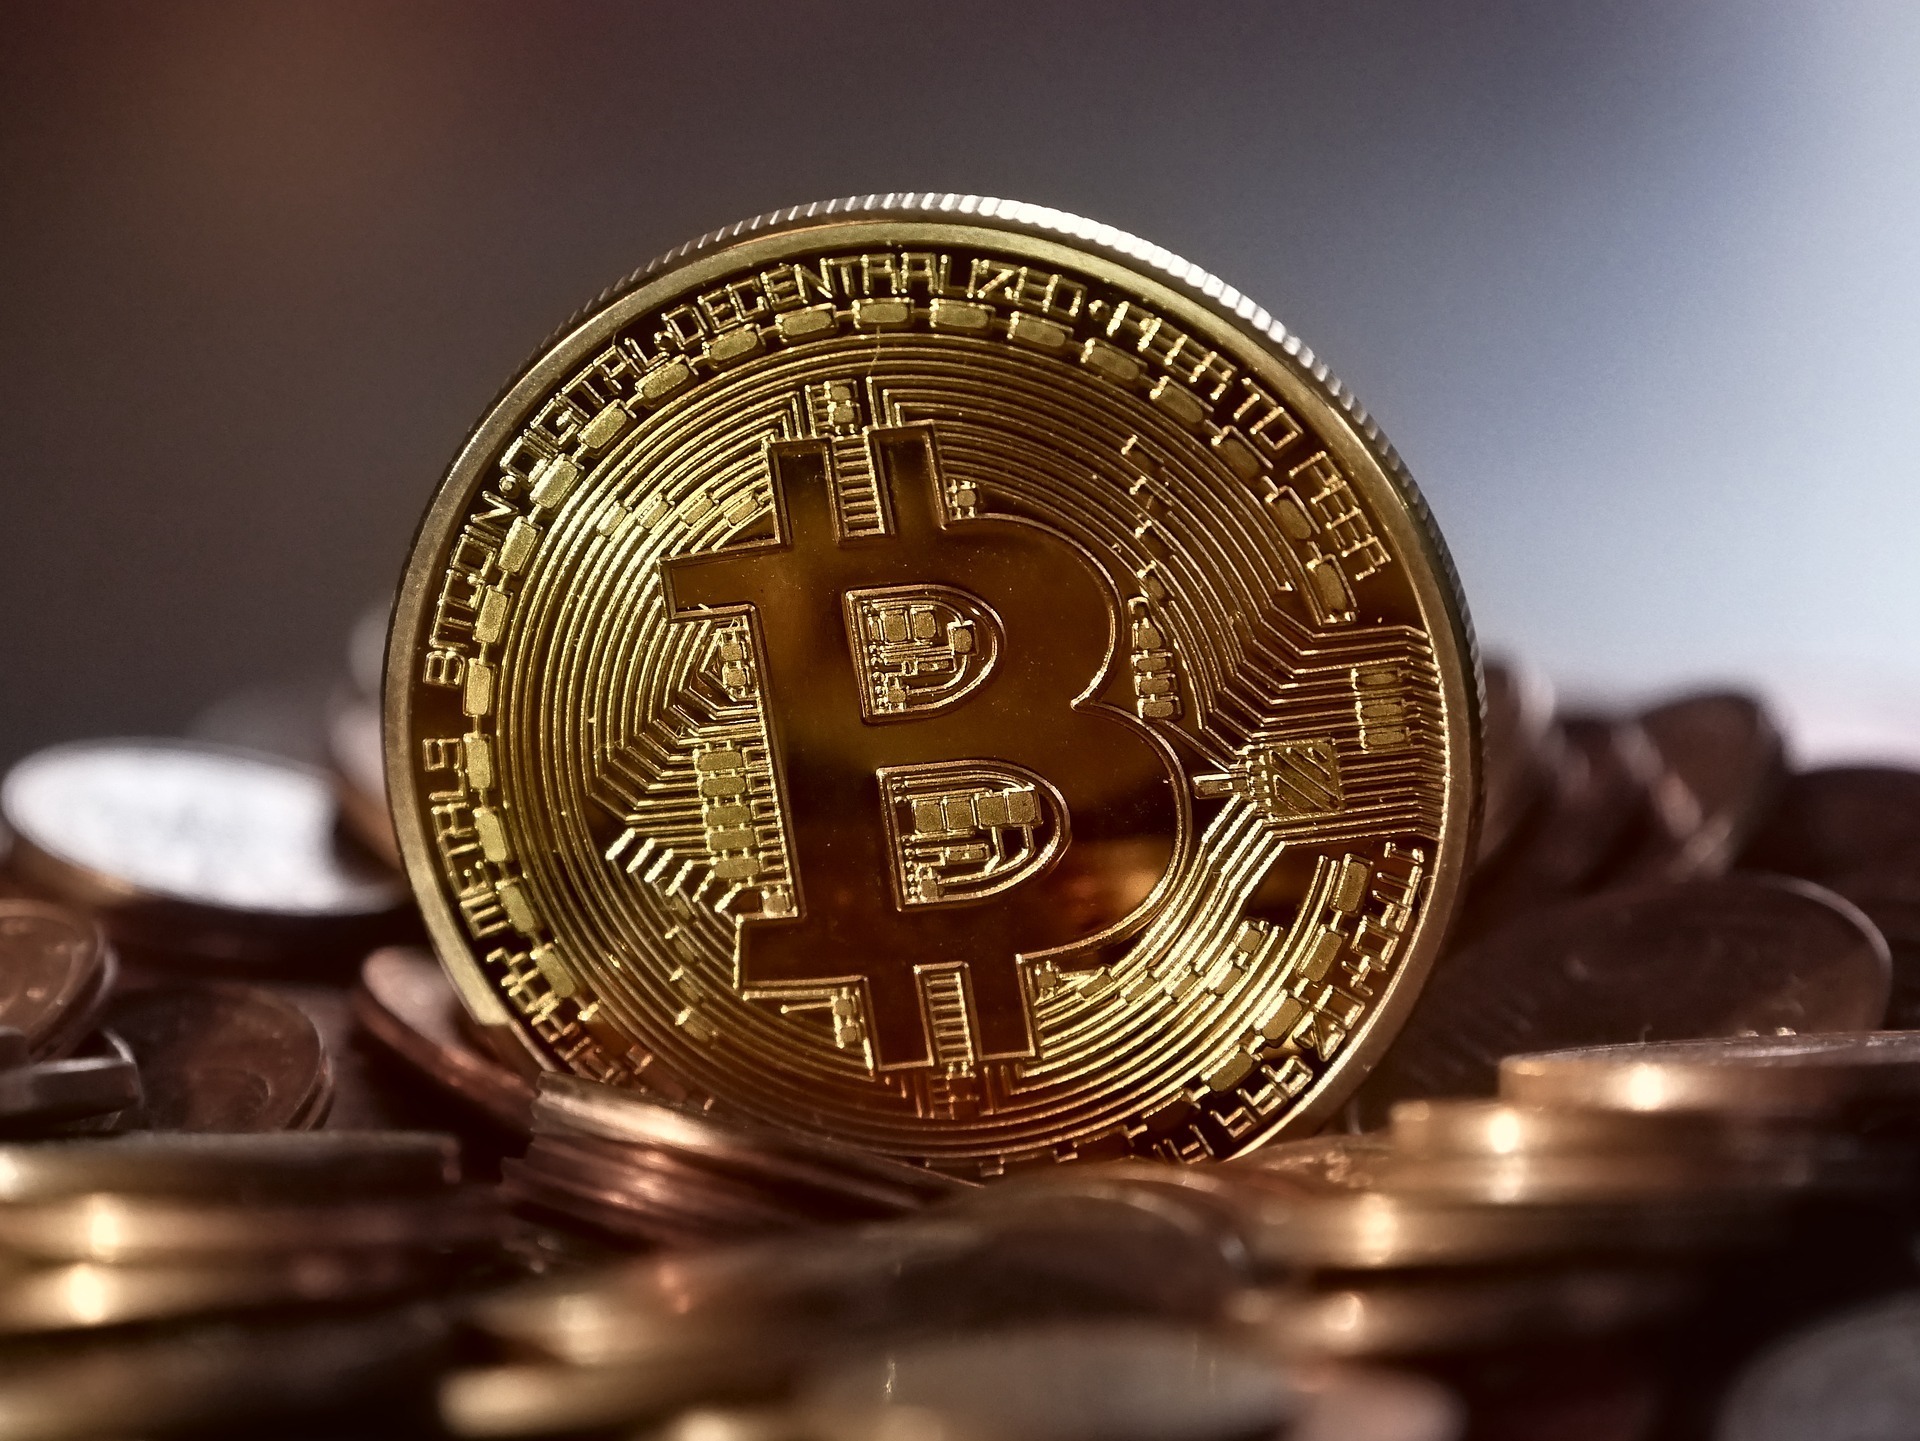 Representación de un bitcoin en una moneda física.